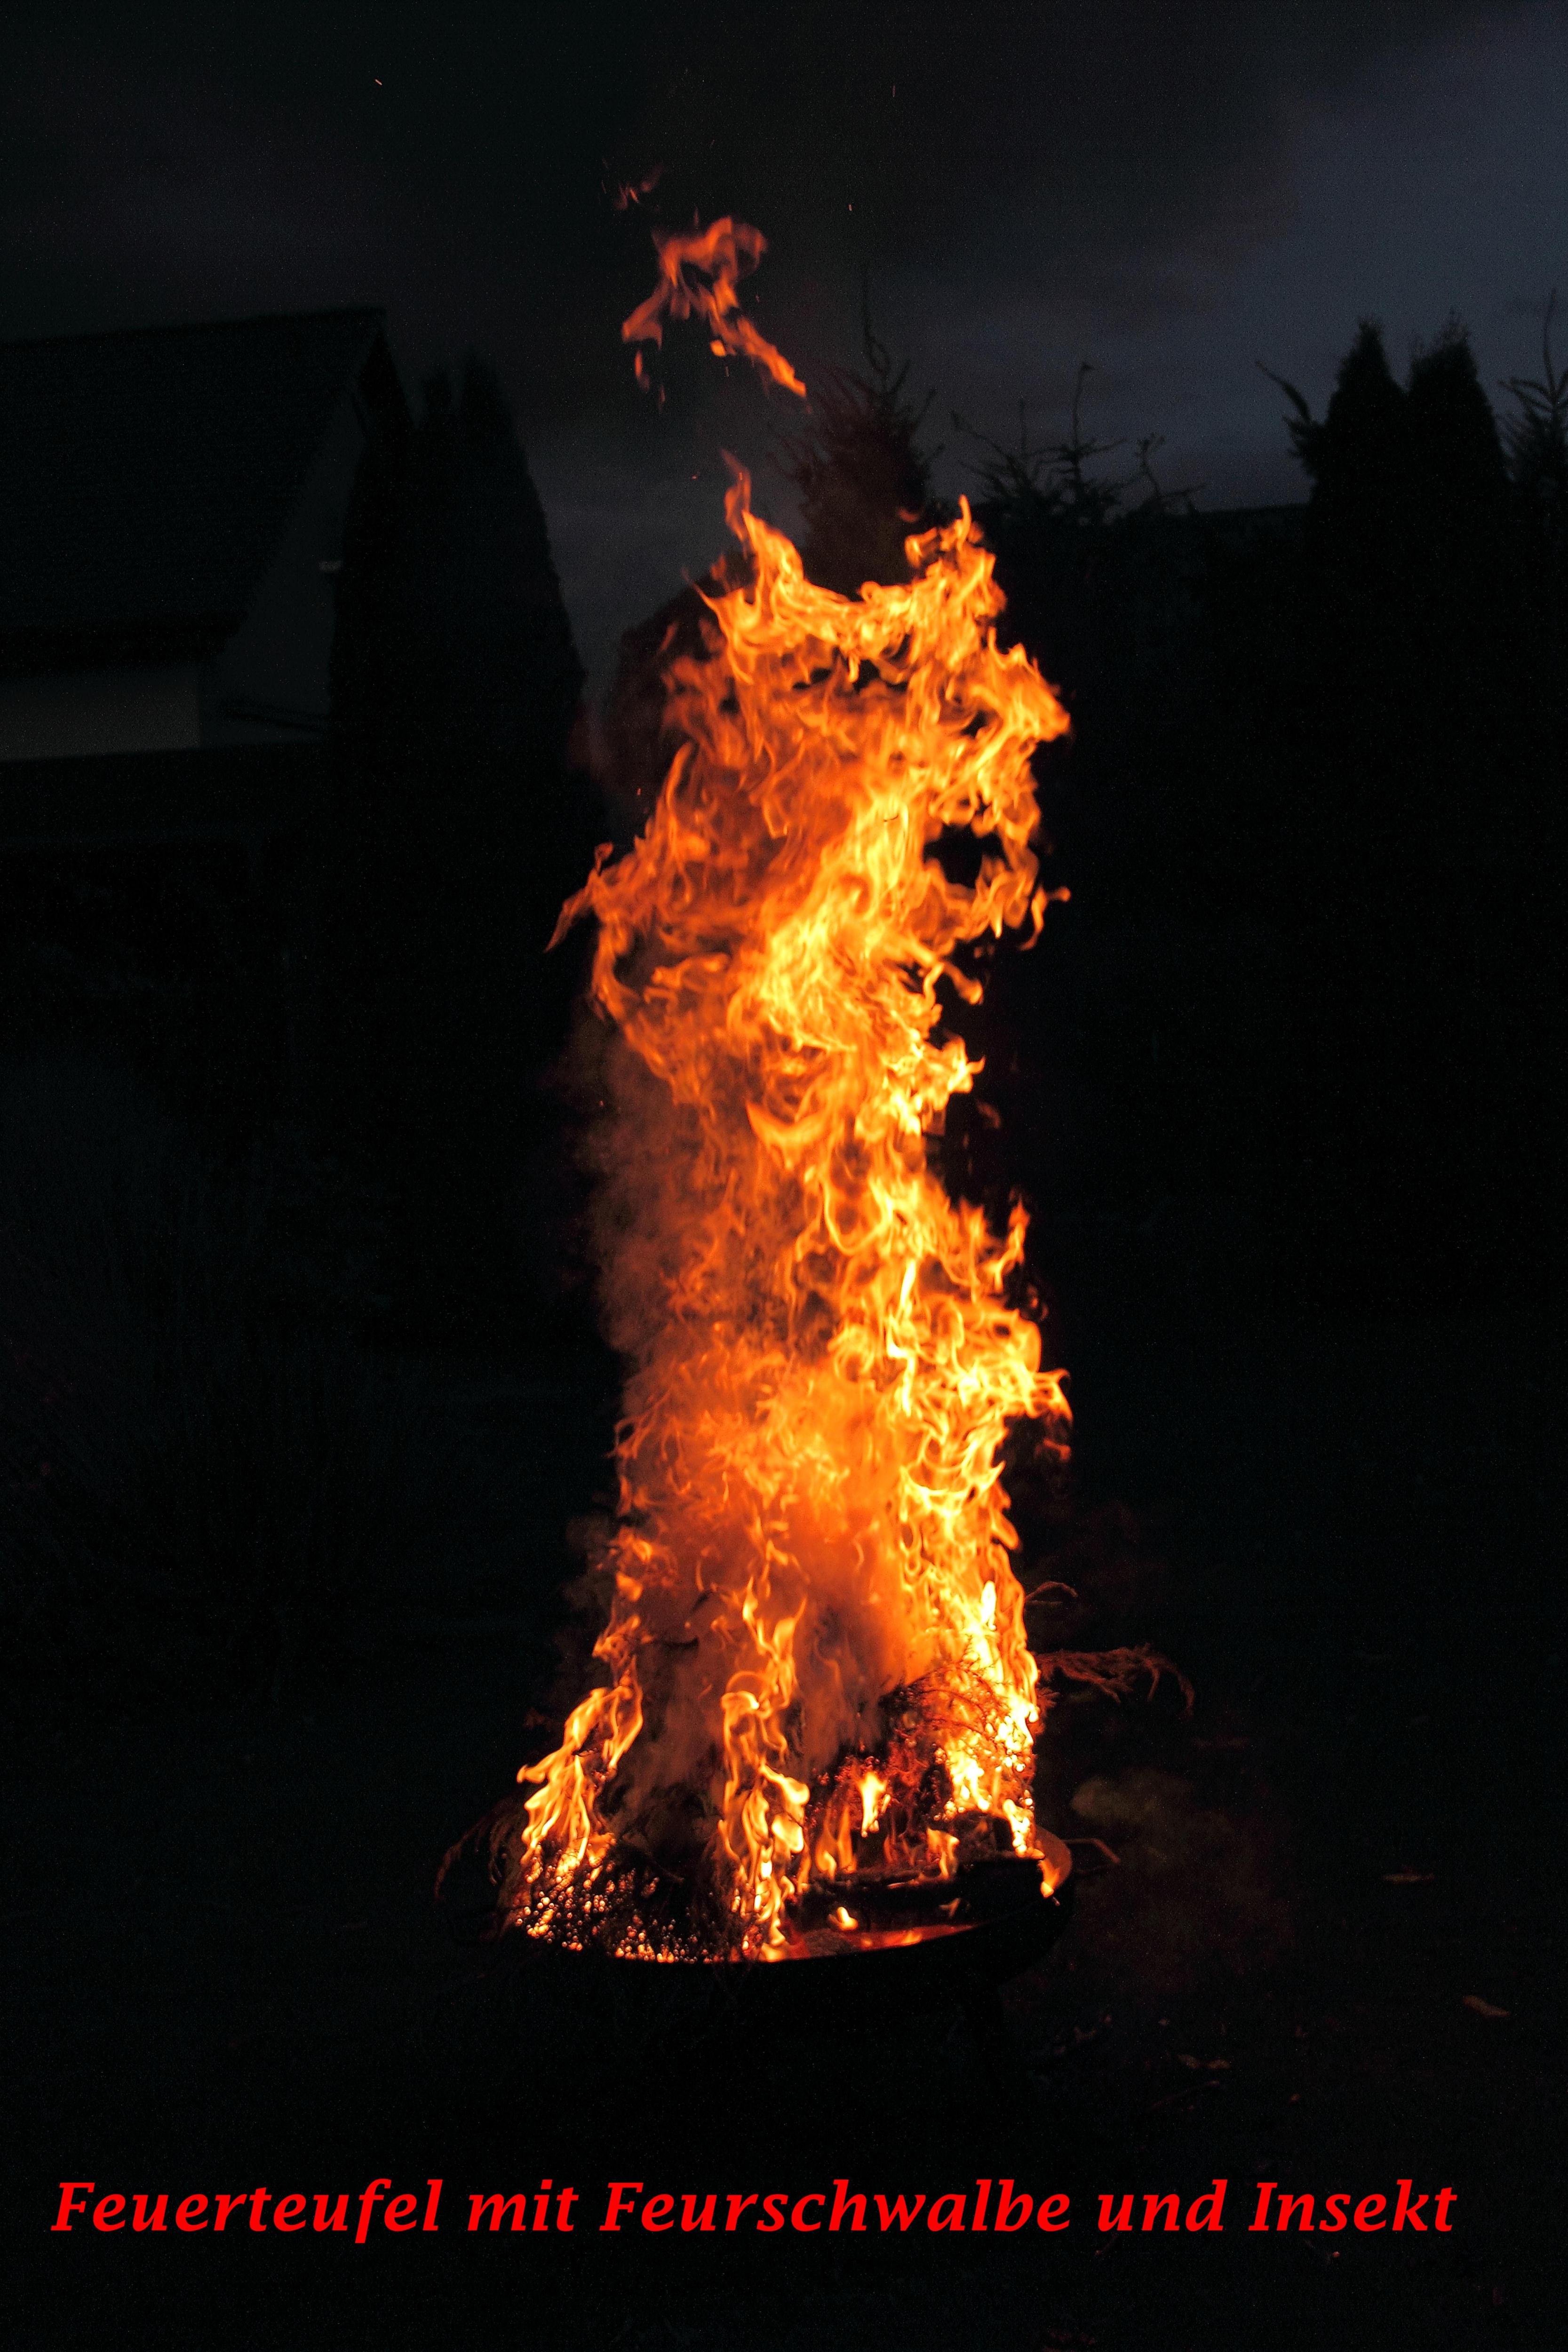 Ein Feuerteufel grinst hämisch aus der Flammensäule.